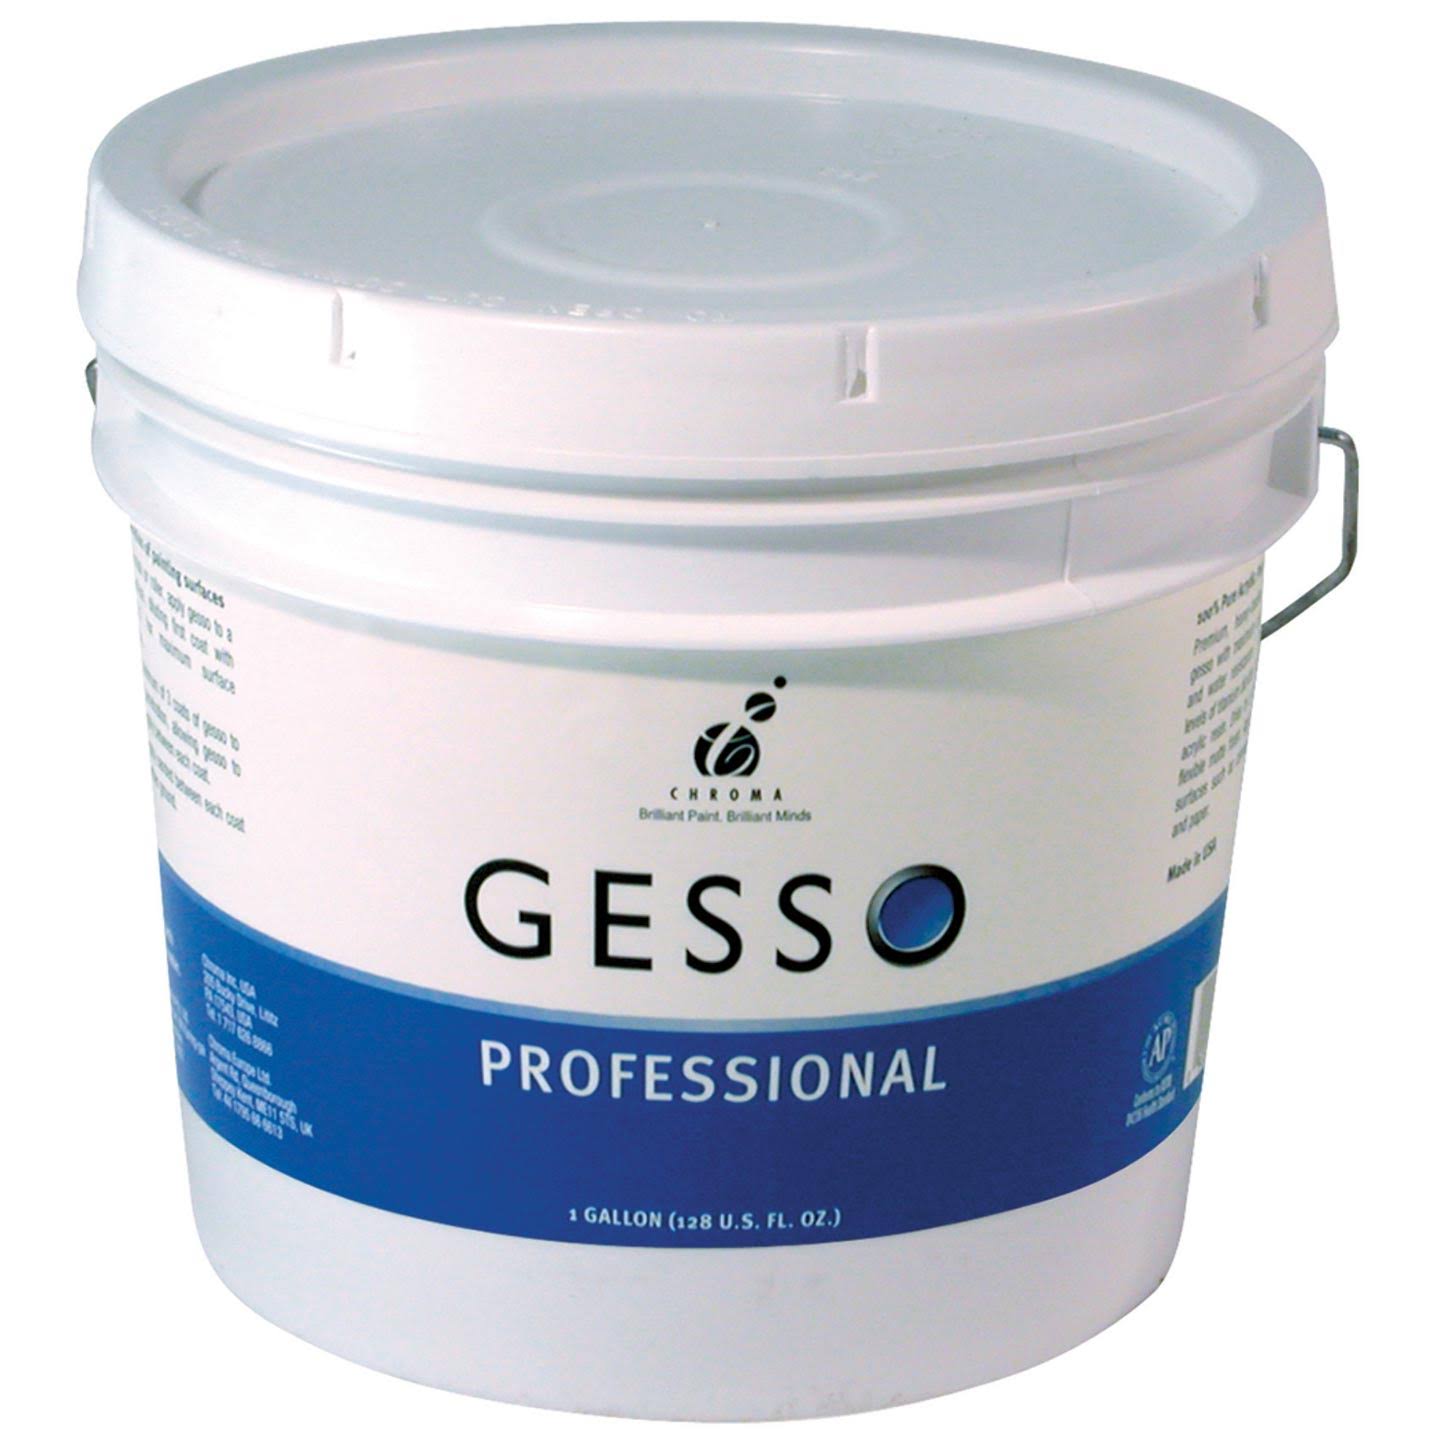 Chroma - Professional Gesso - Gallon